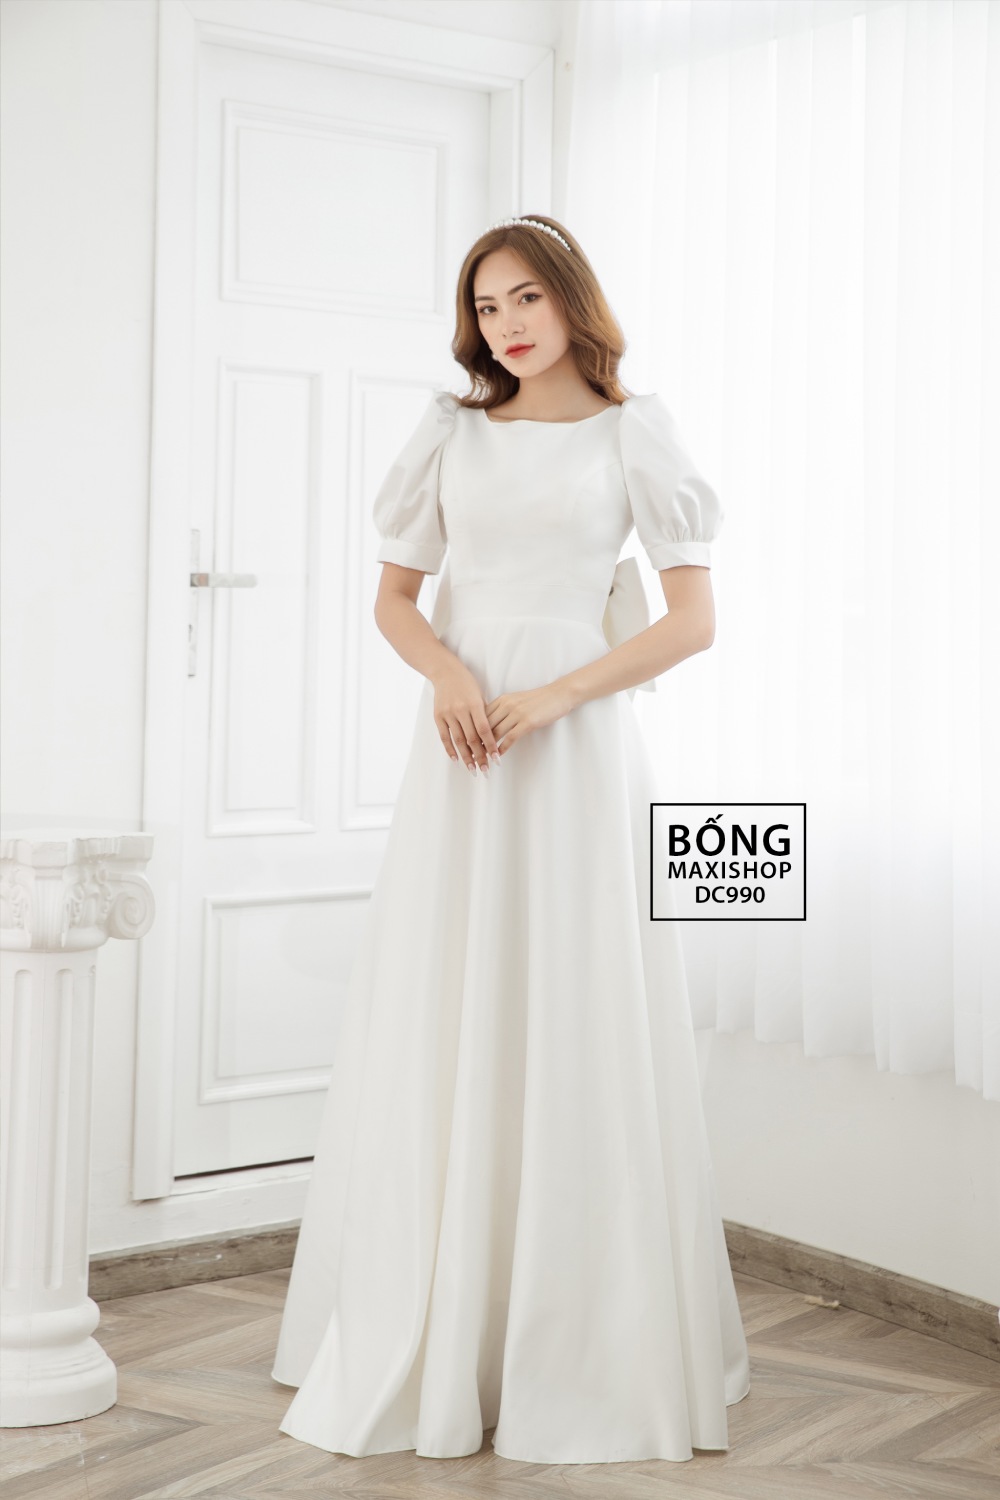 Váy đầm trắng - item thời trang không nhuốm màu thời gian